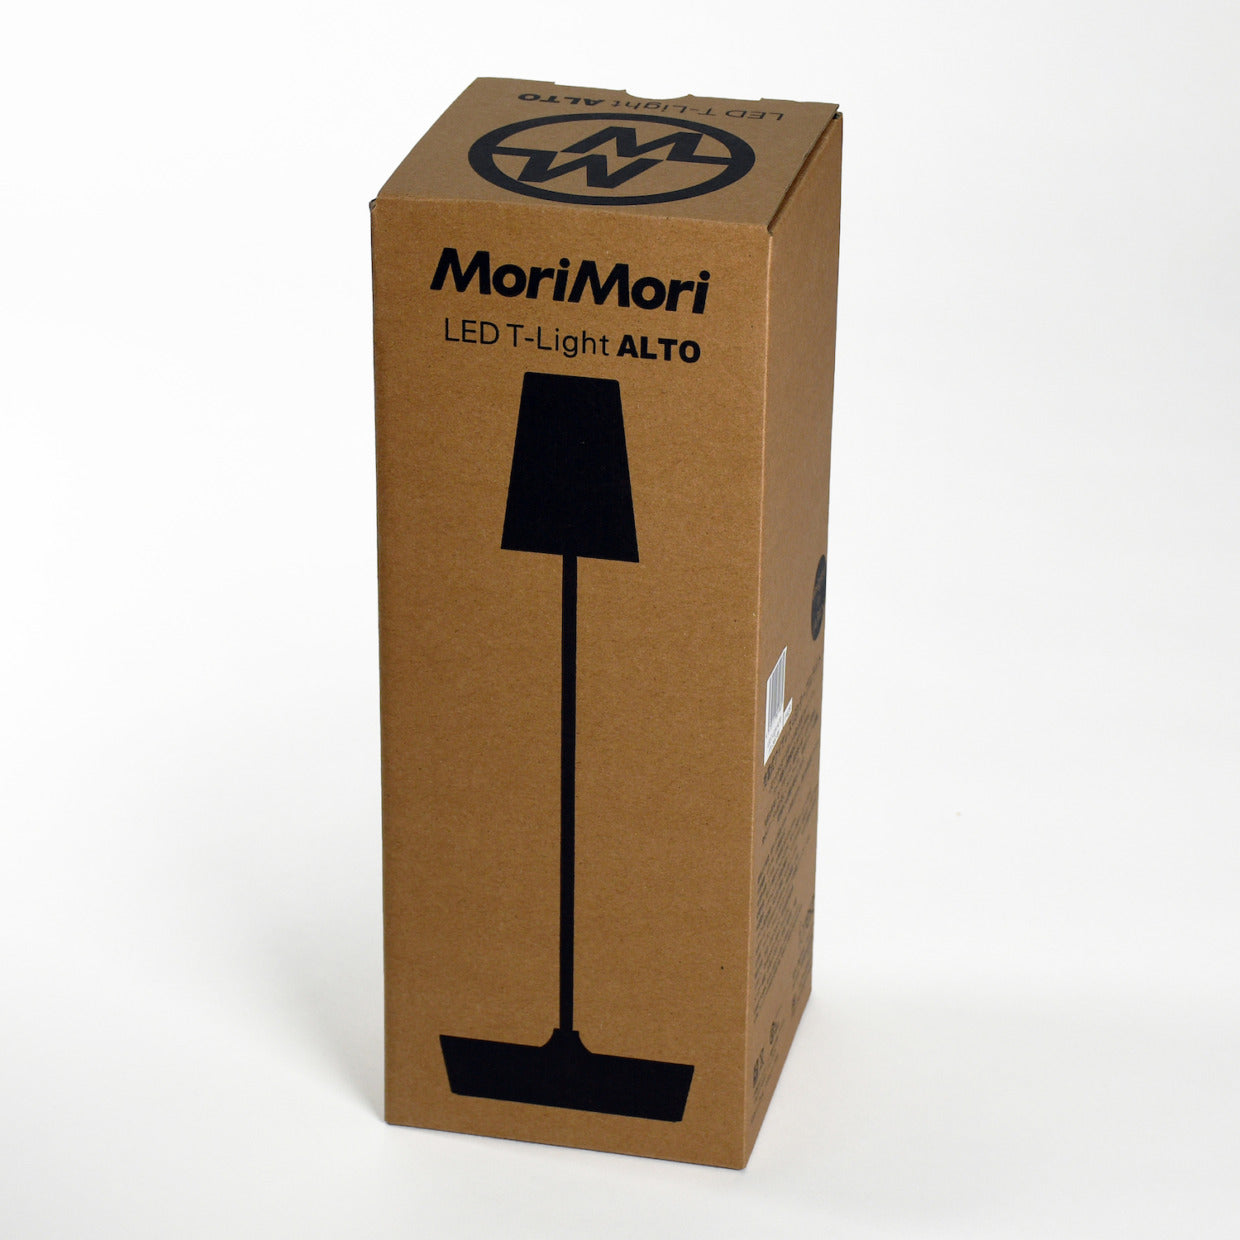 ワイヤレステーブルライト MoriMori LED 充電式3段階調光式 照明 T-Light ALTO ブラック色